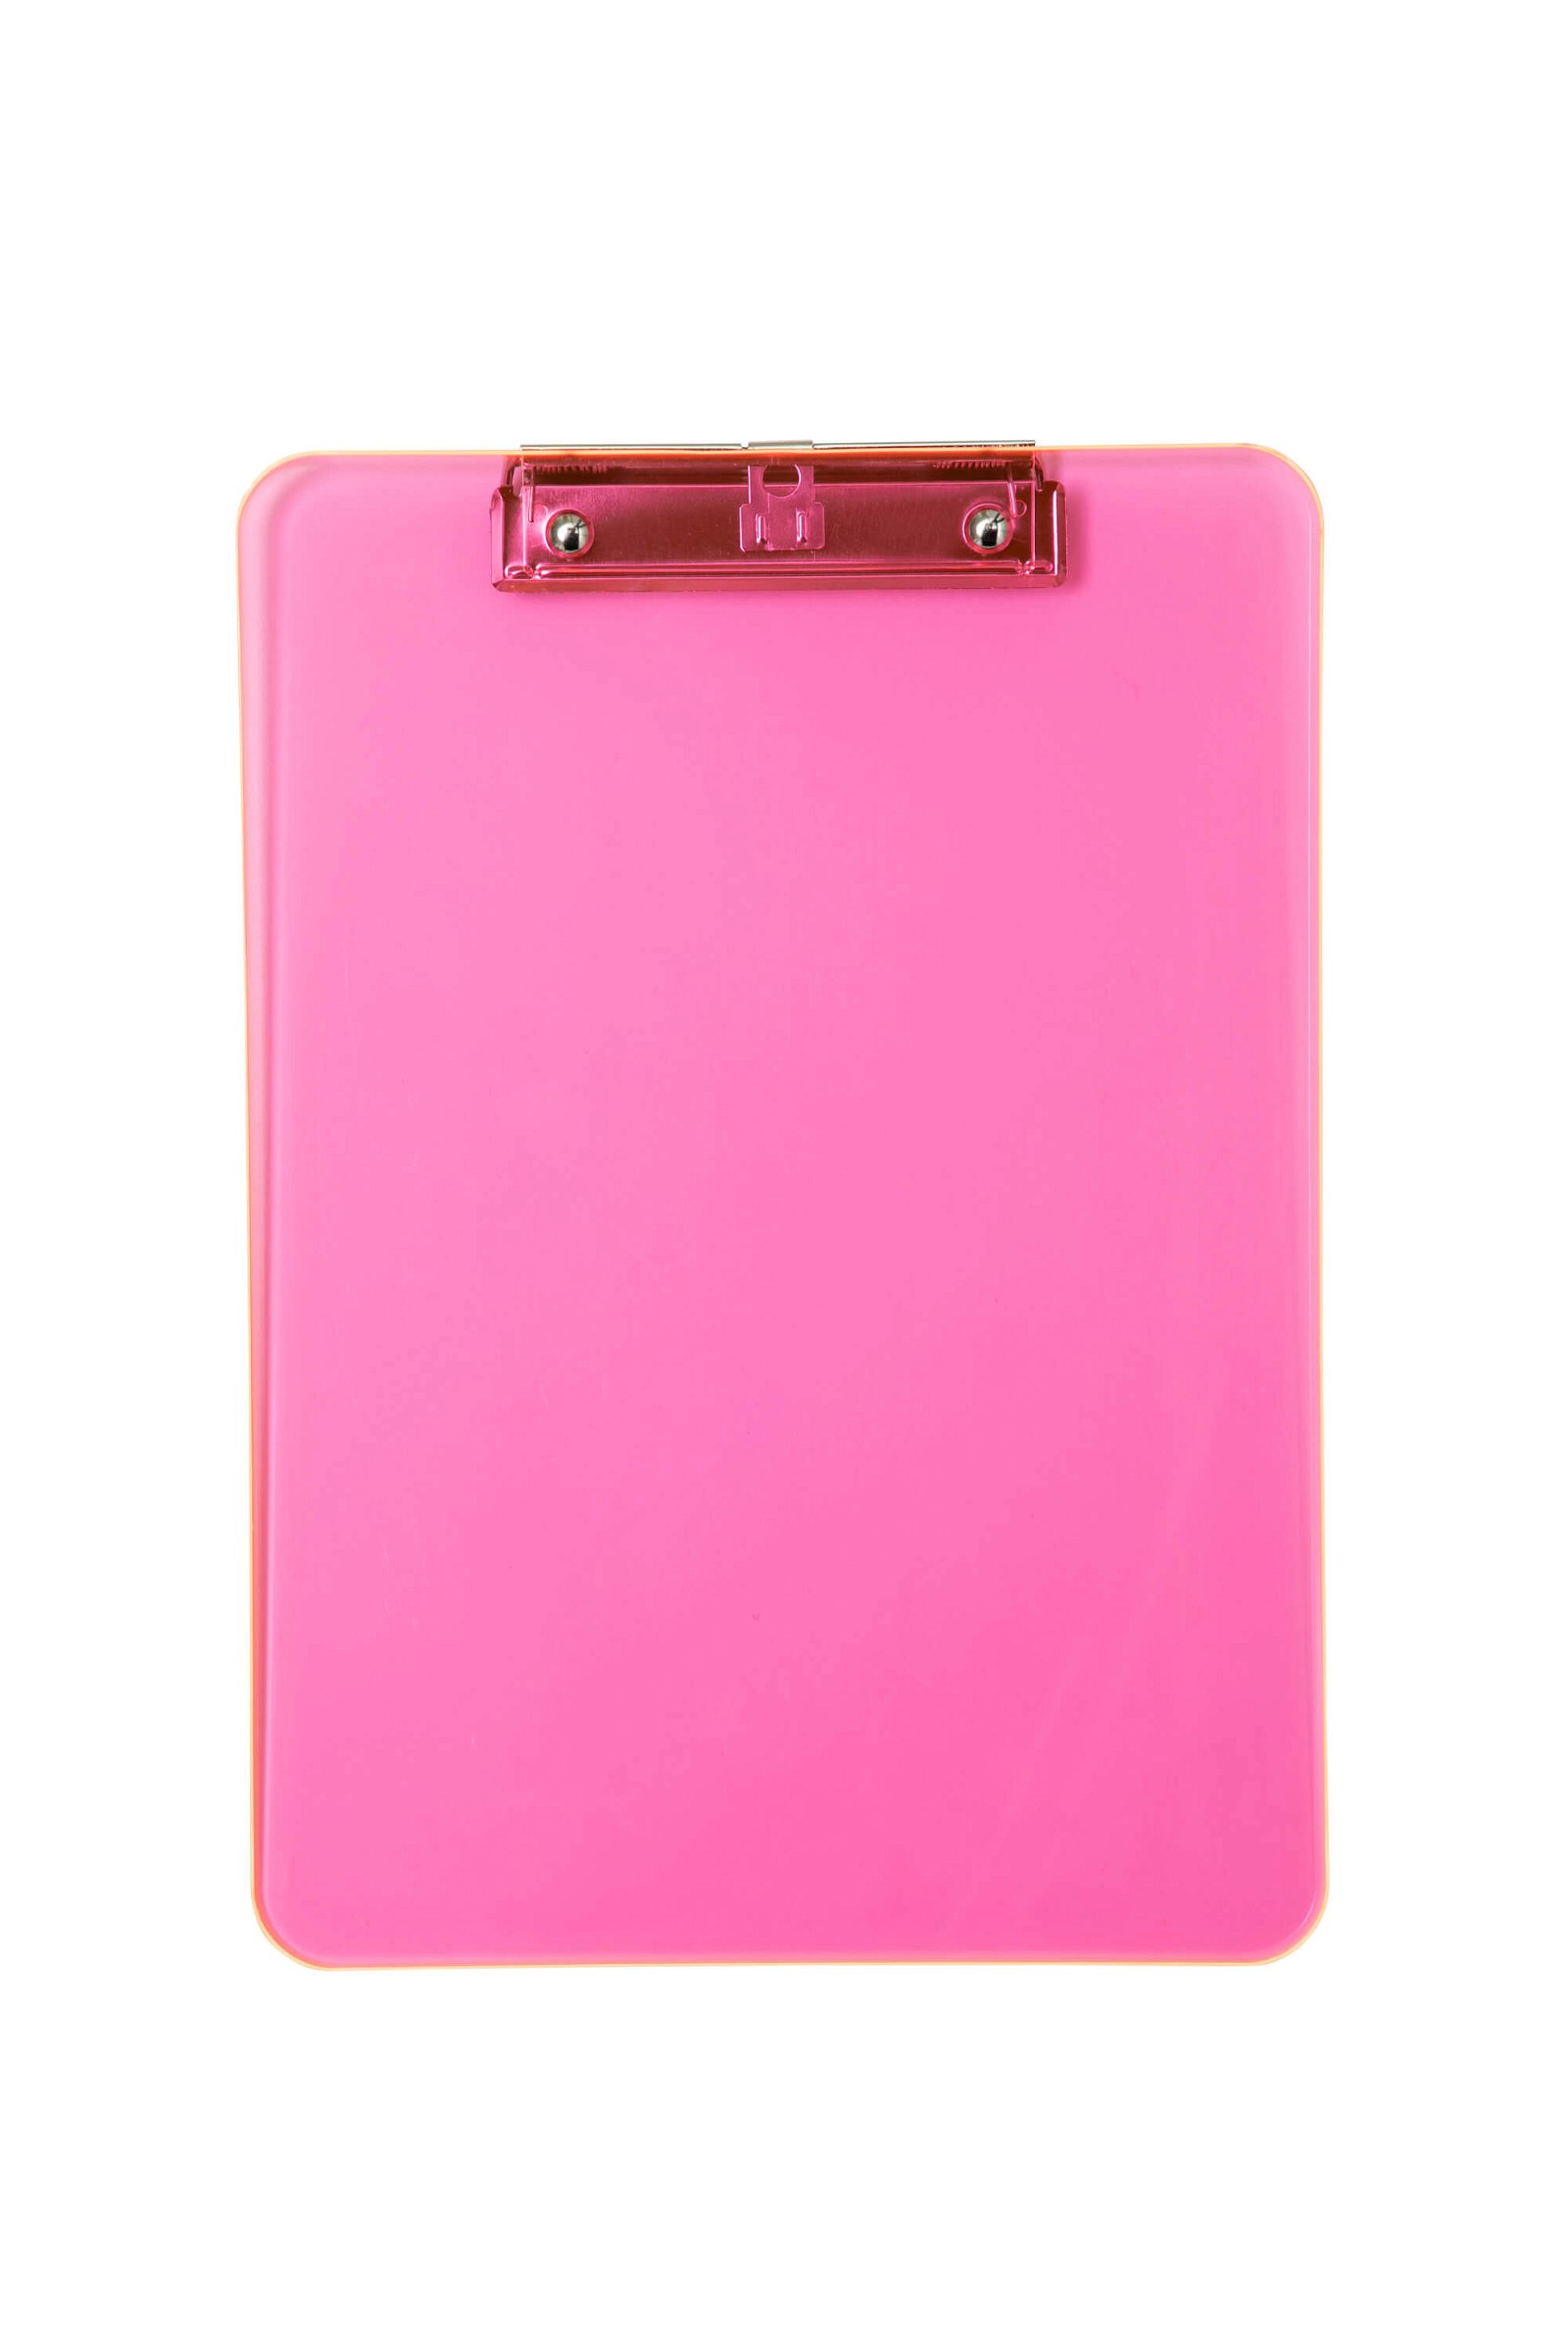 Schreibplatte MAULneon pink